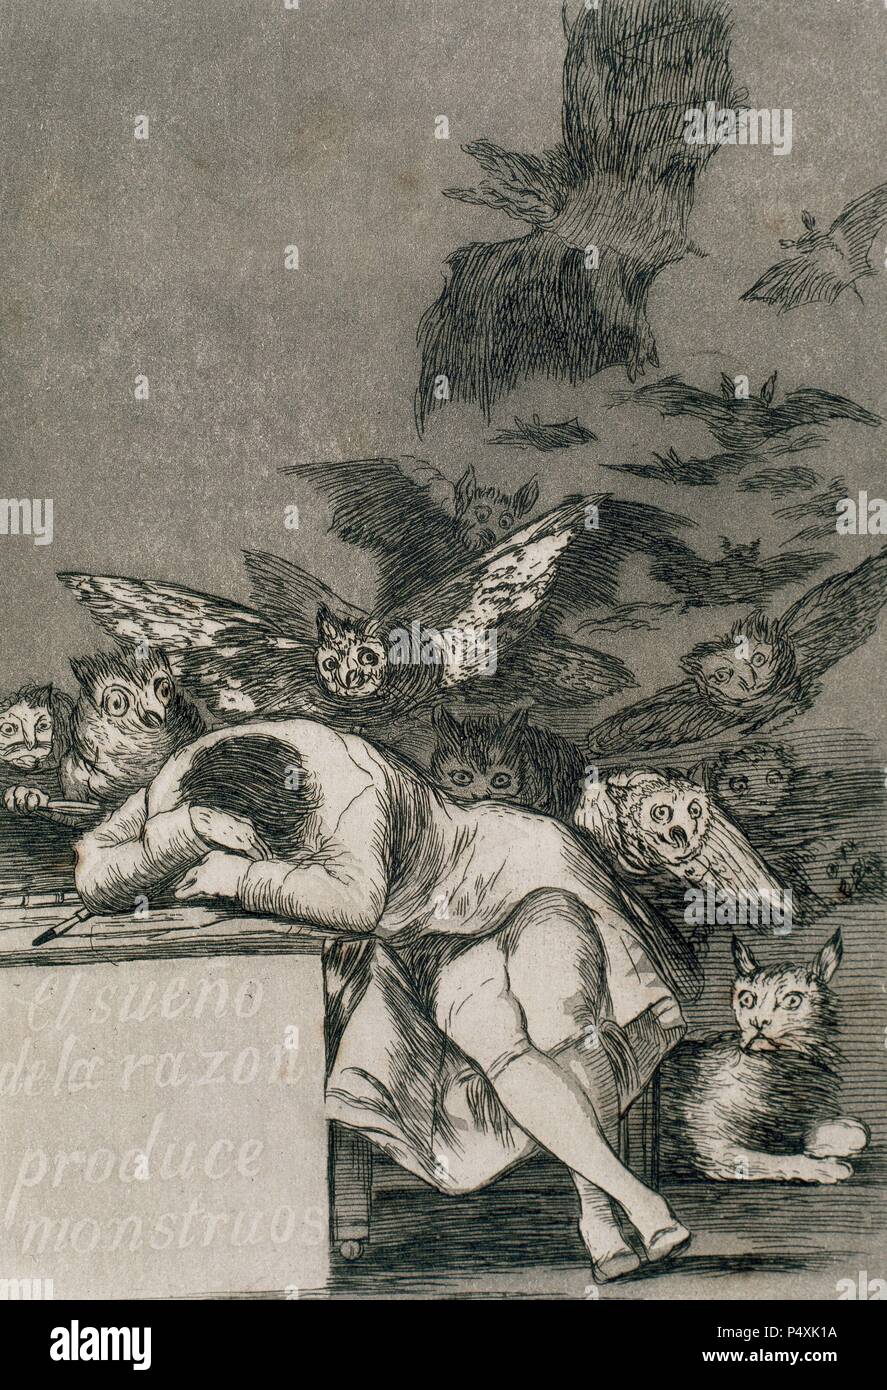 Francisco de Goya (1746-1828). Spanischer Maler und Graphiker. Los Caprichos. ÀDonde va Mama? (Wohin gehst du, Mama?). Nummer 65. Aquatinta. 1799. Platte 43. Reproduktion von M.SEGUI ich Riera. Stockfoto